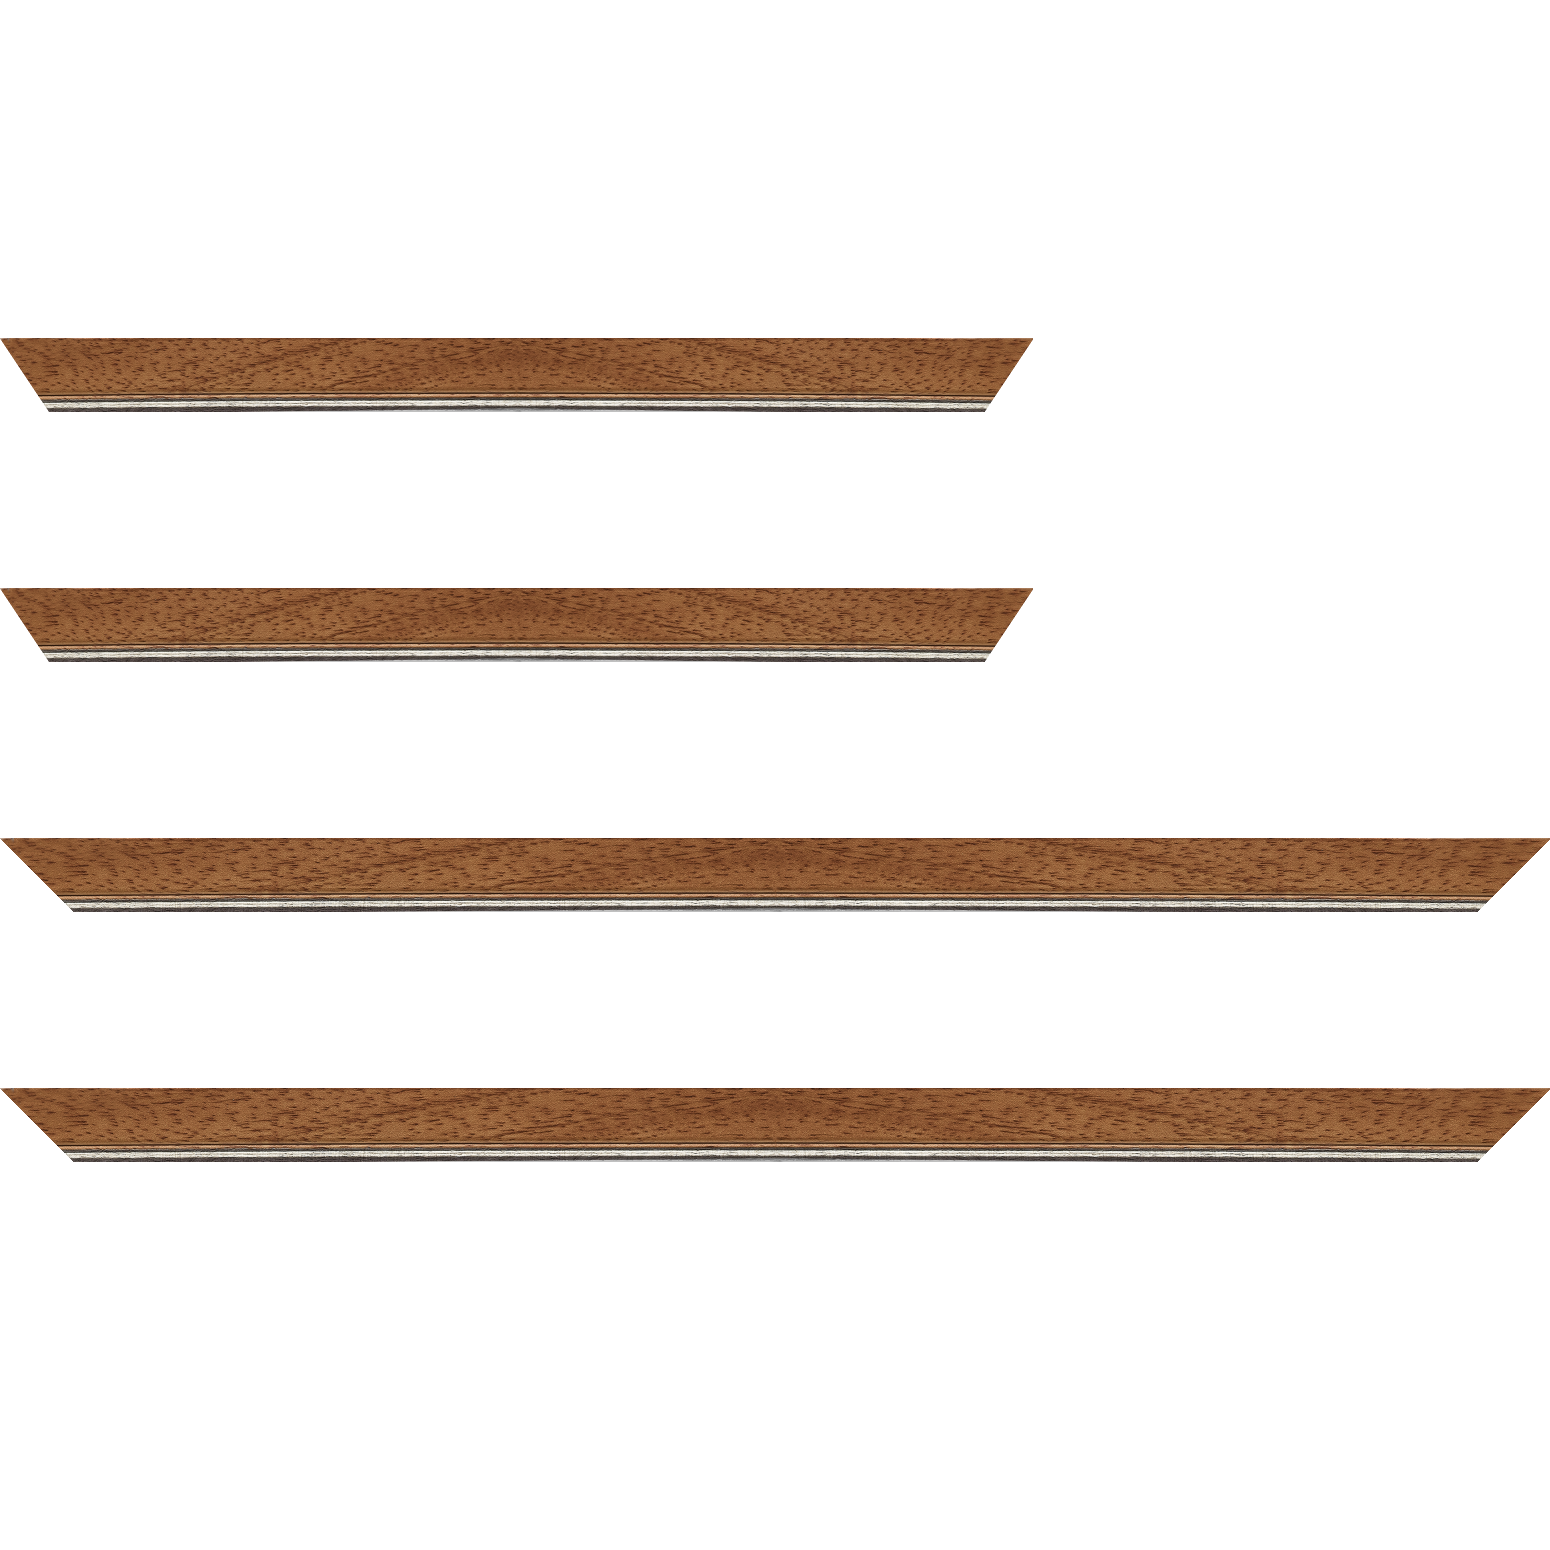 Baguette bois profil plat largeur 2.5cm couleur marron ton bois filet argent - 24x30